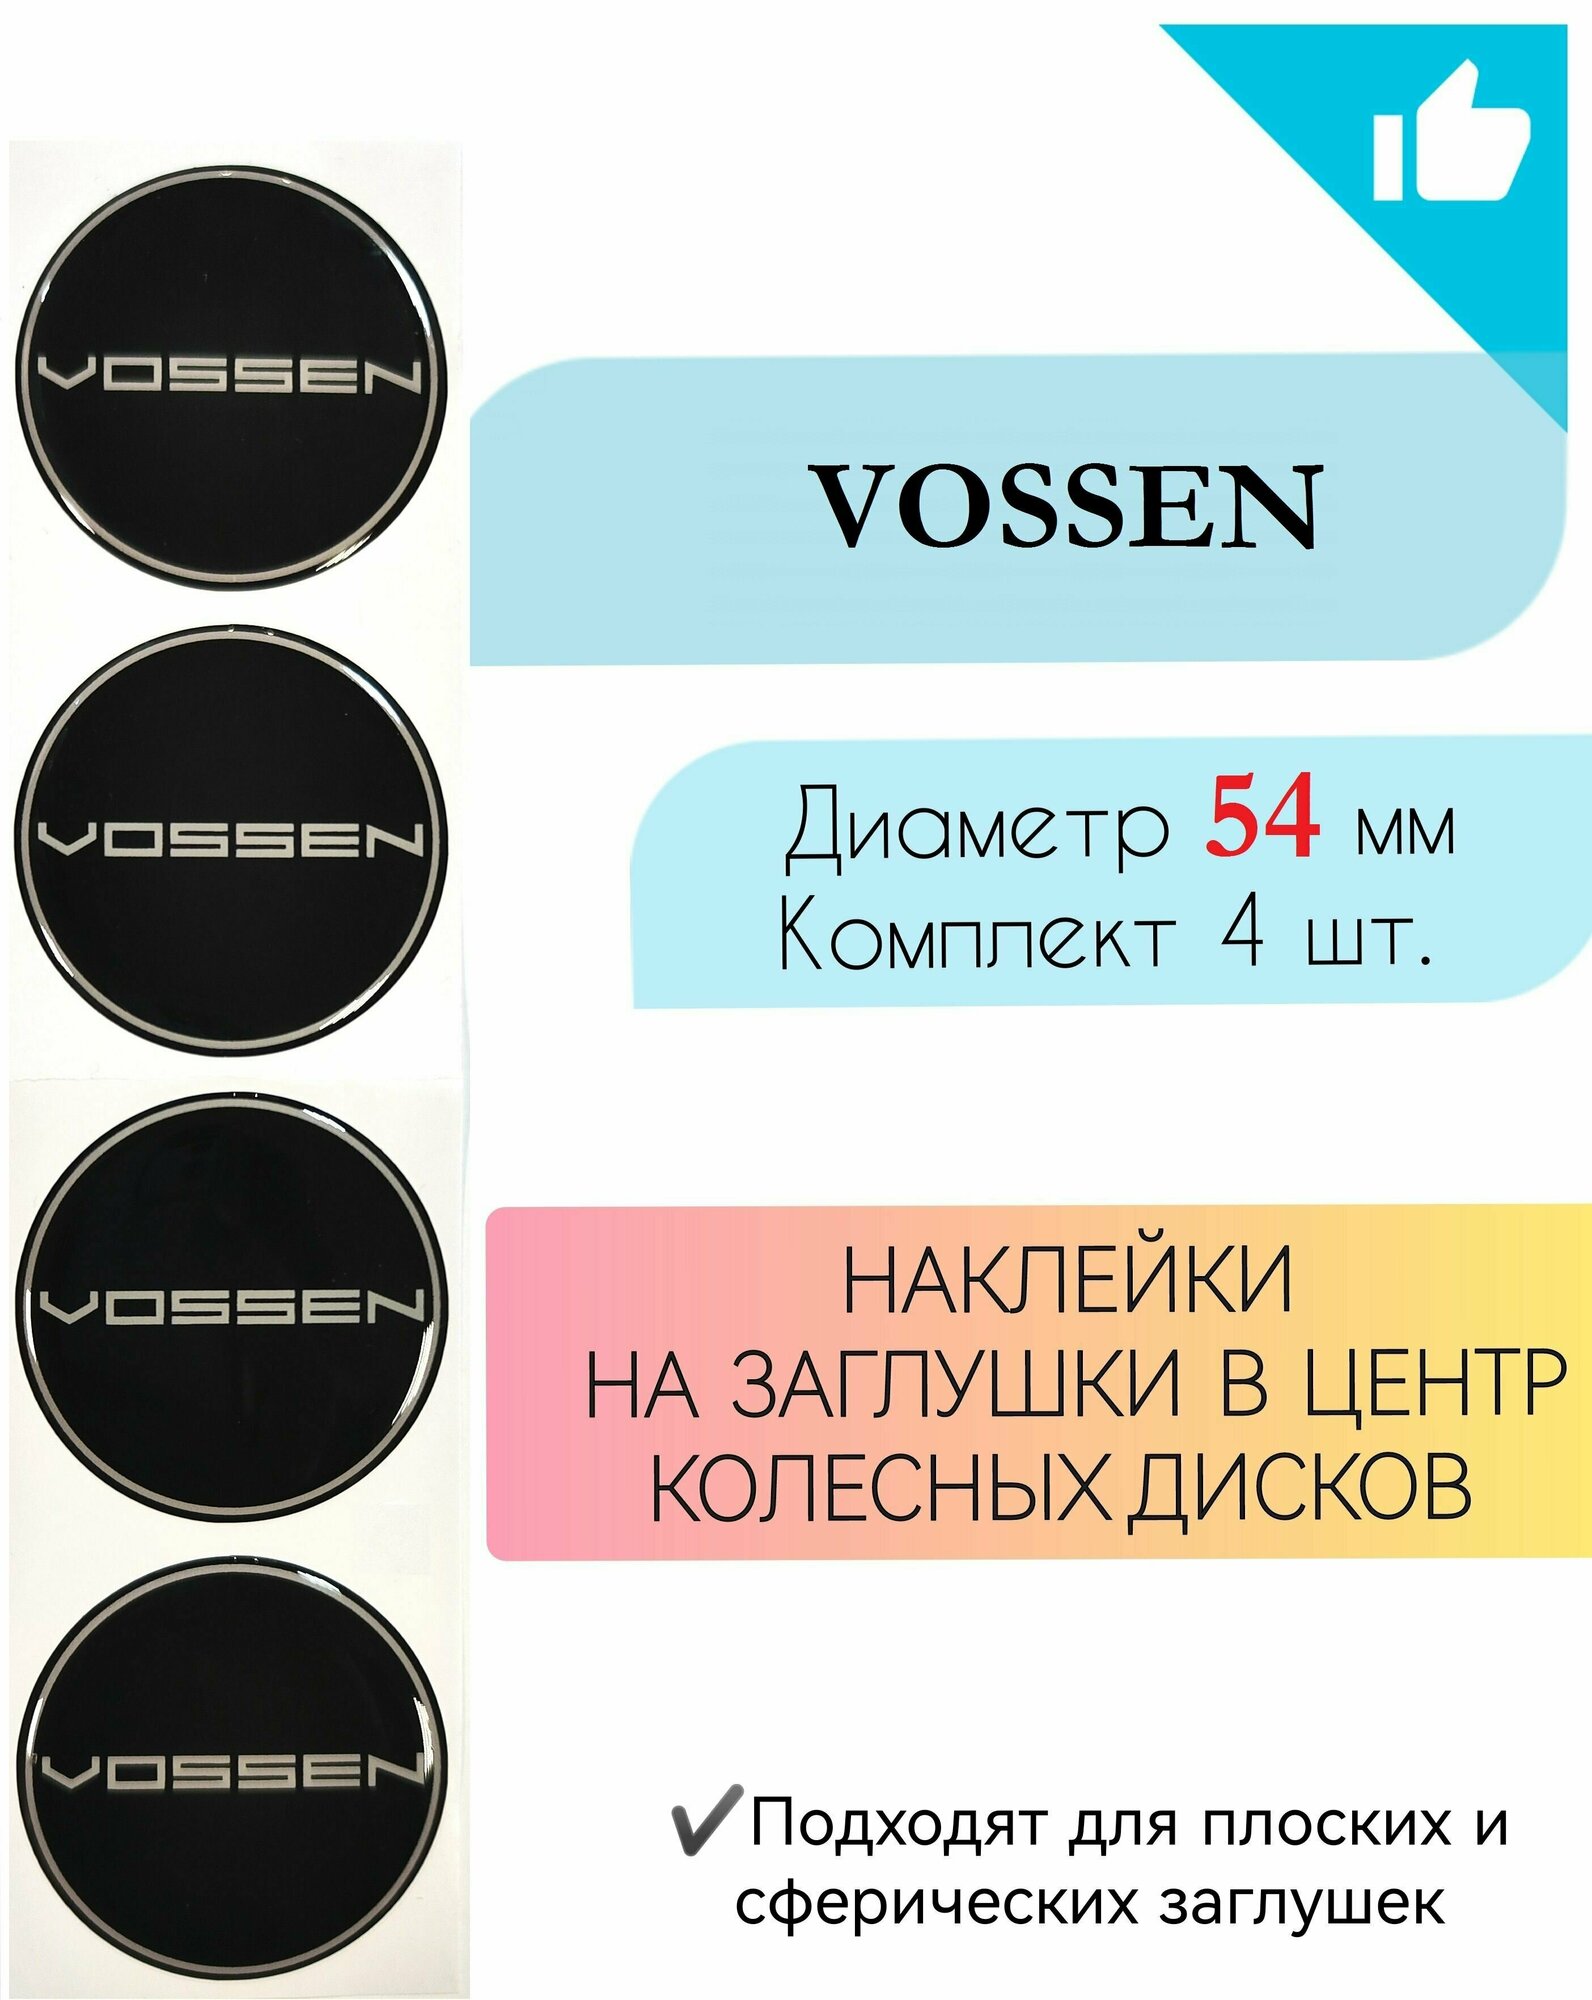 Наклейки на колесные диски / Диаметр 50 мм /Воссен/Vossen